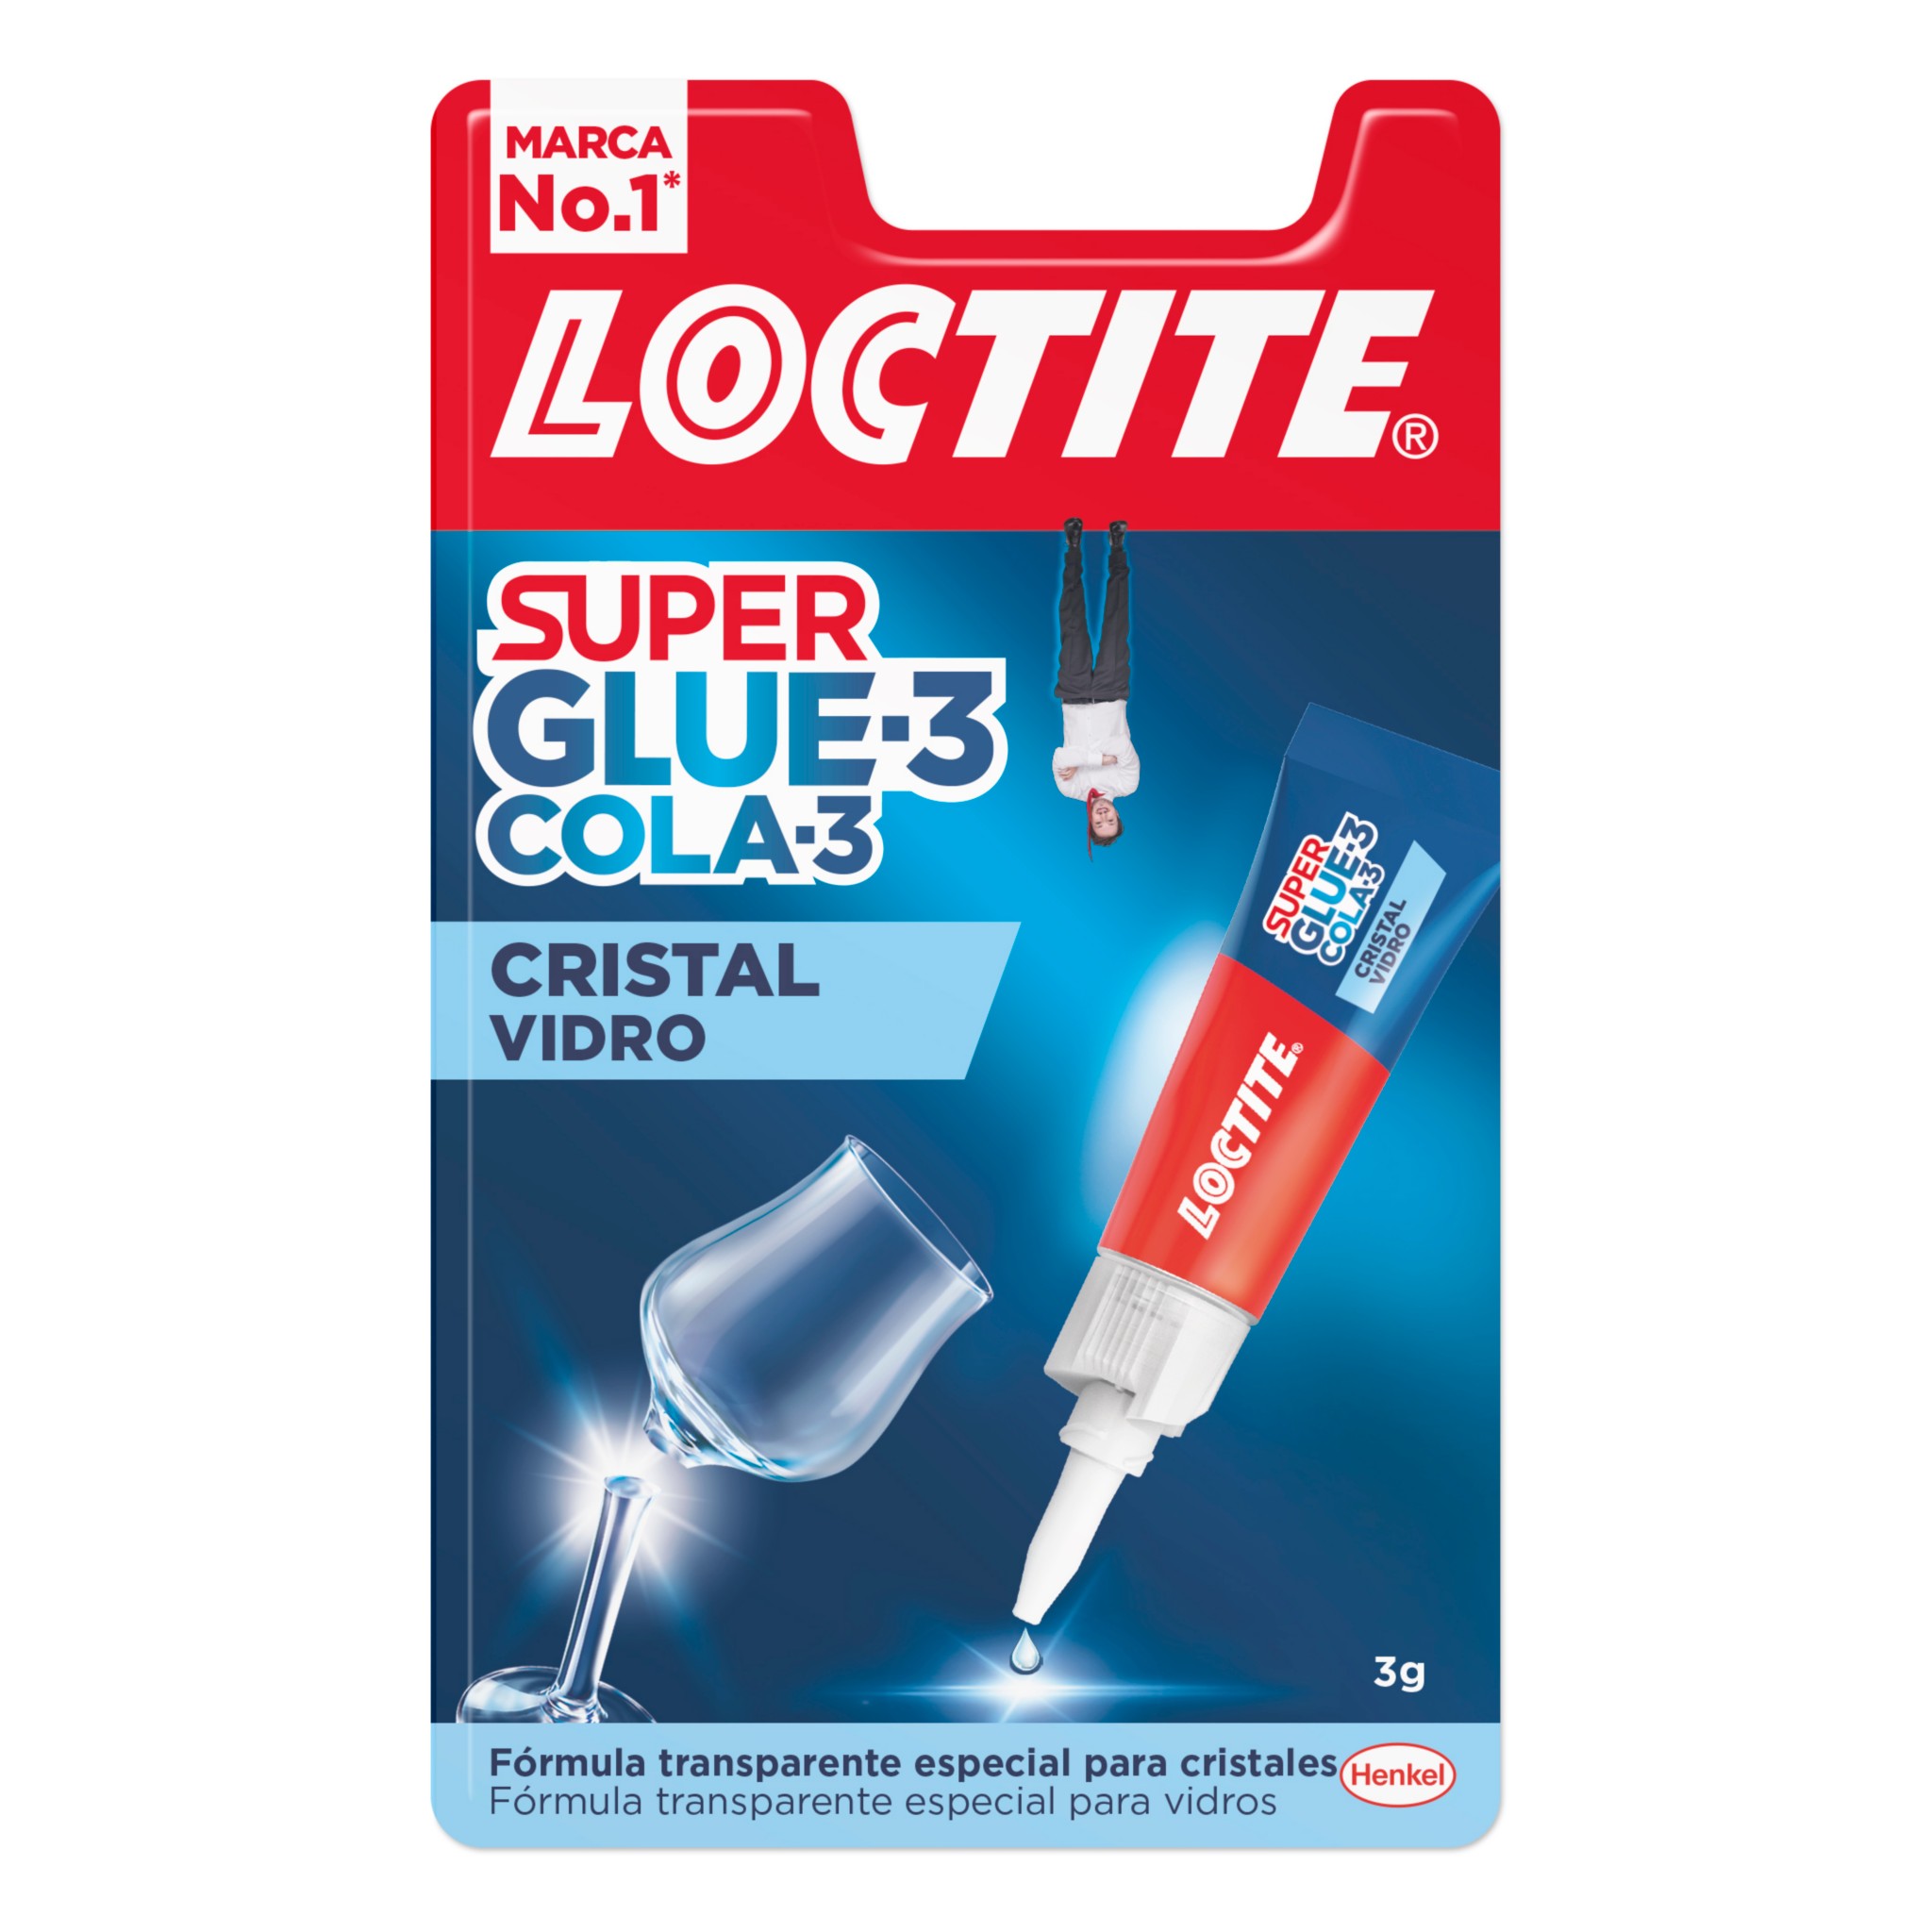 Super Glue-3 Cristal